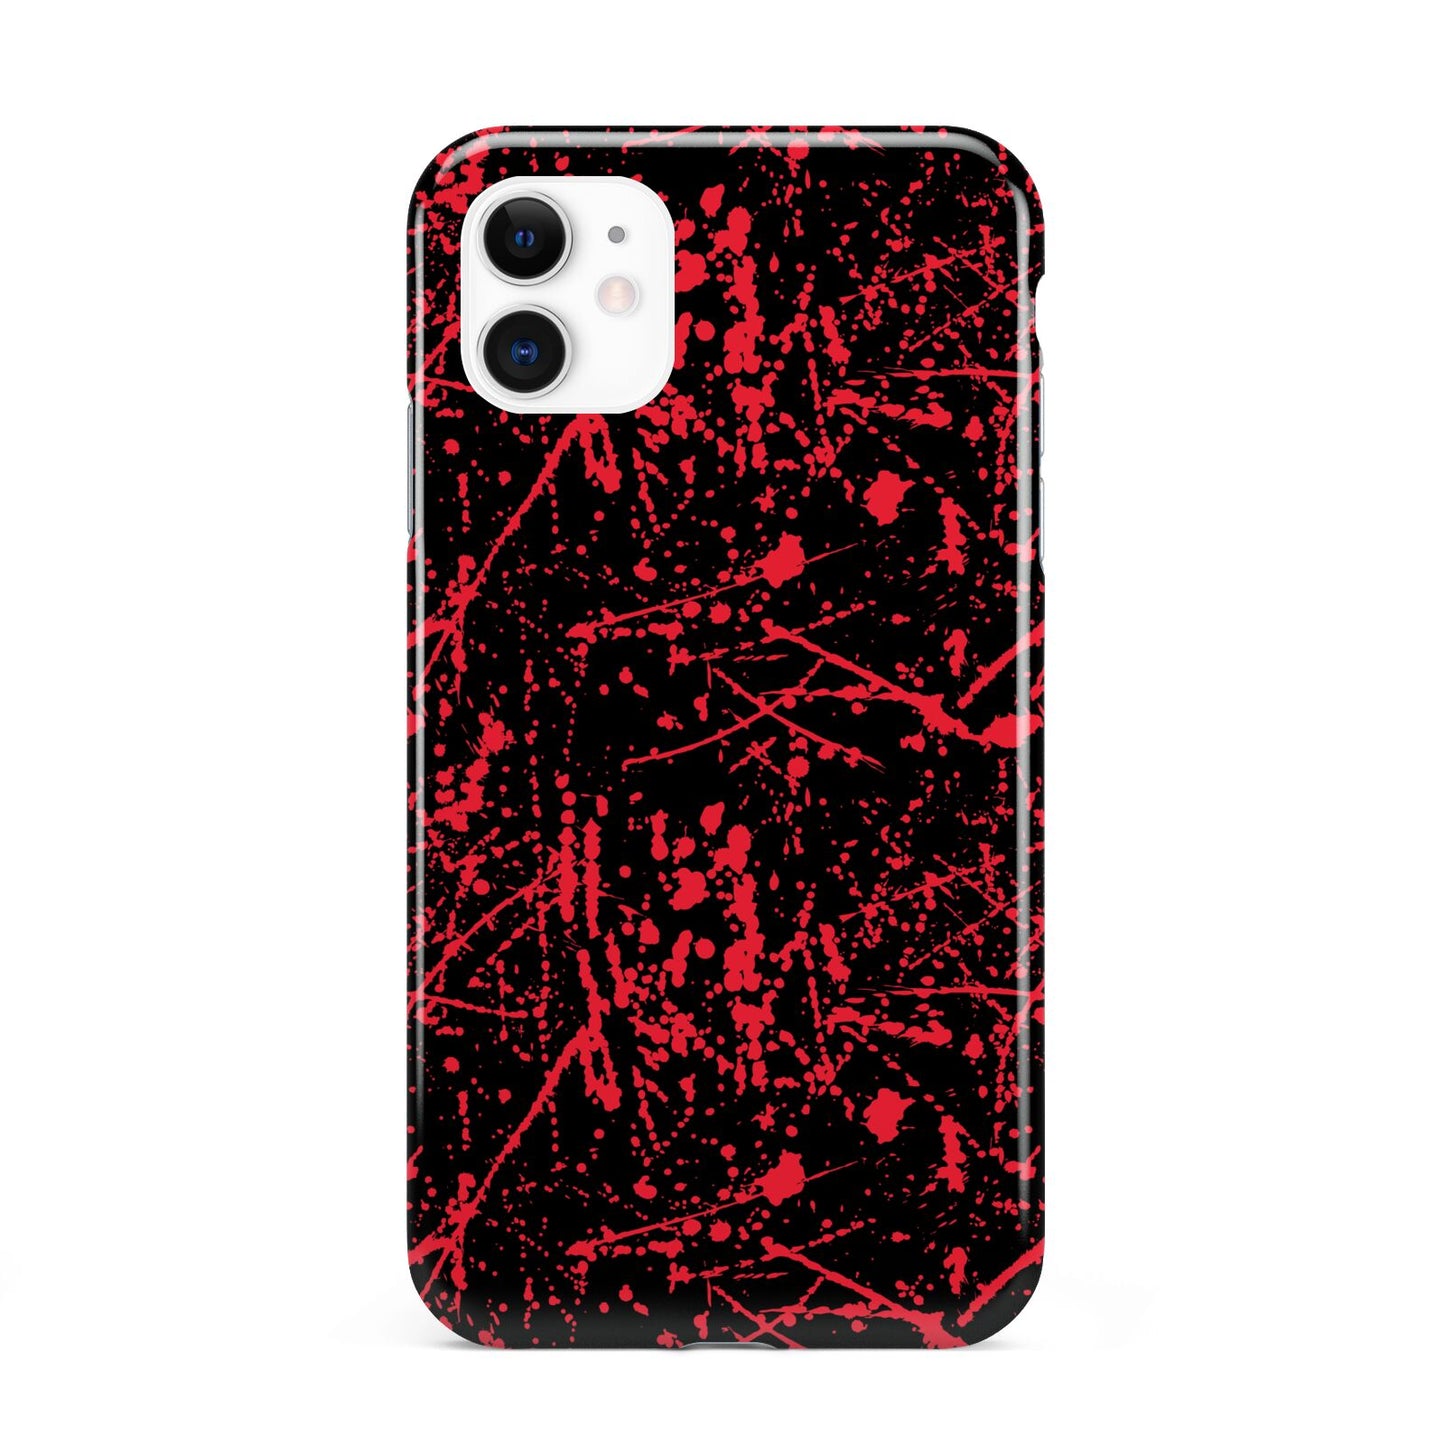 Blood Splatters iPhone 11 3D Tough Case